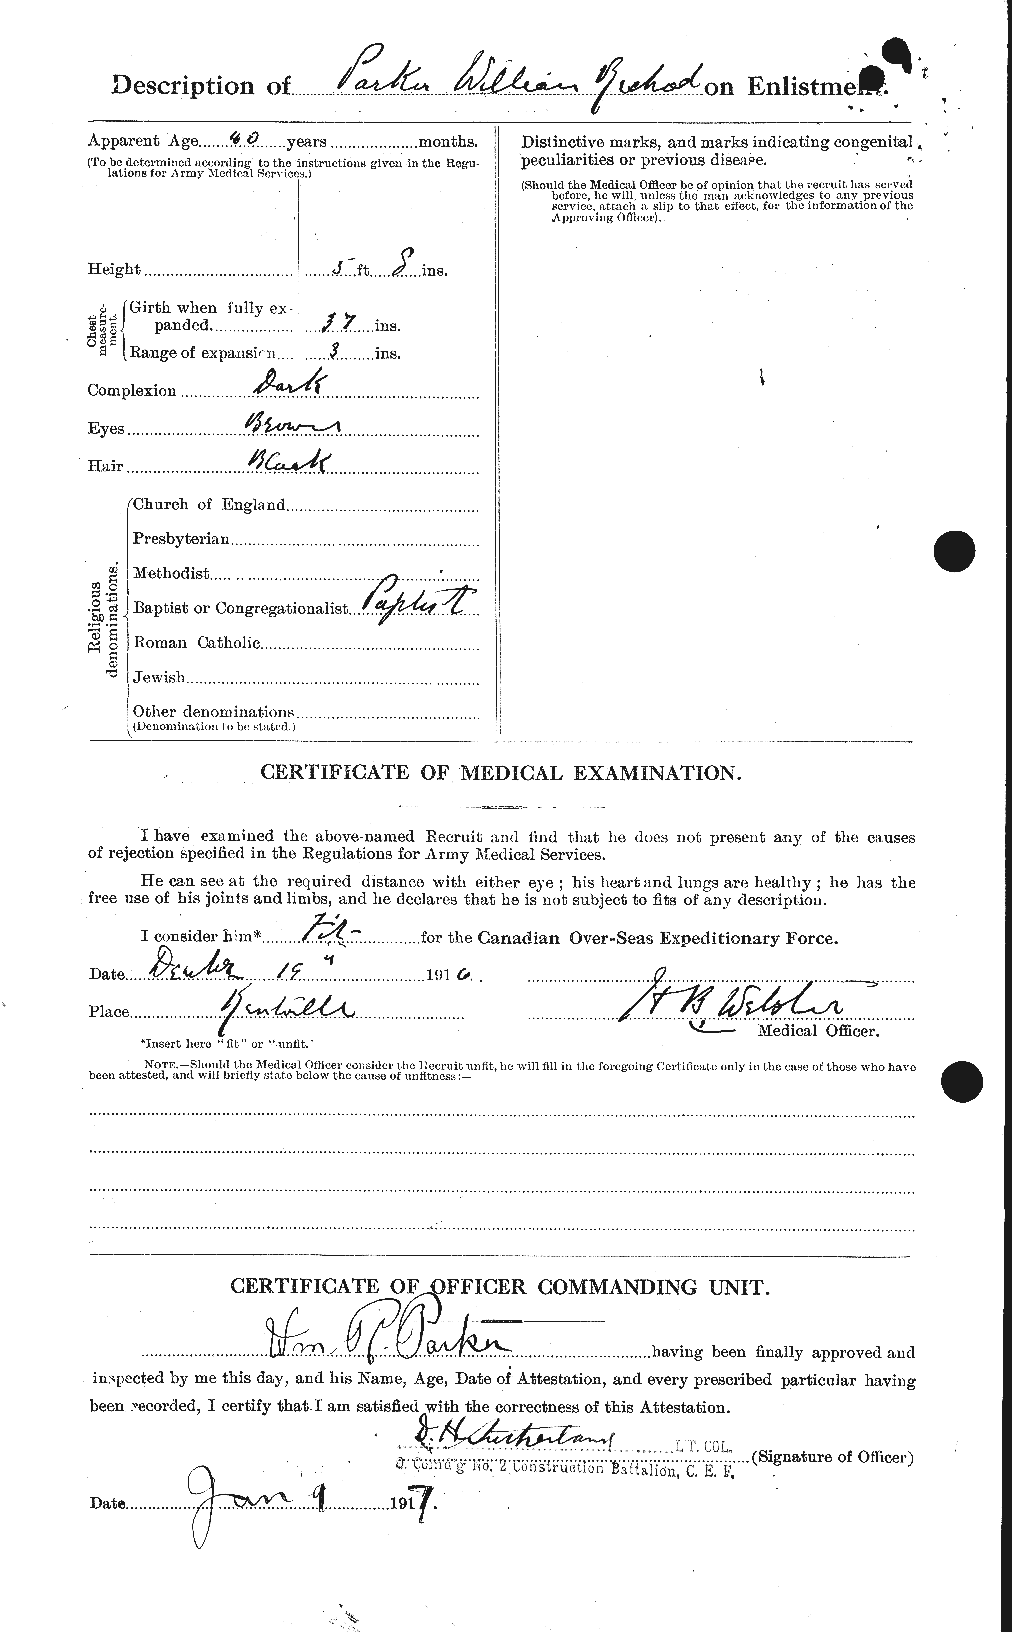 Dossiers du Personnel de la Première Guerre mondiale - CEC 565783b